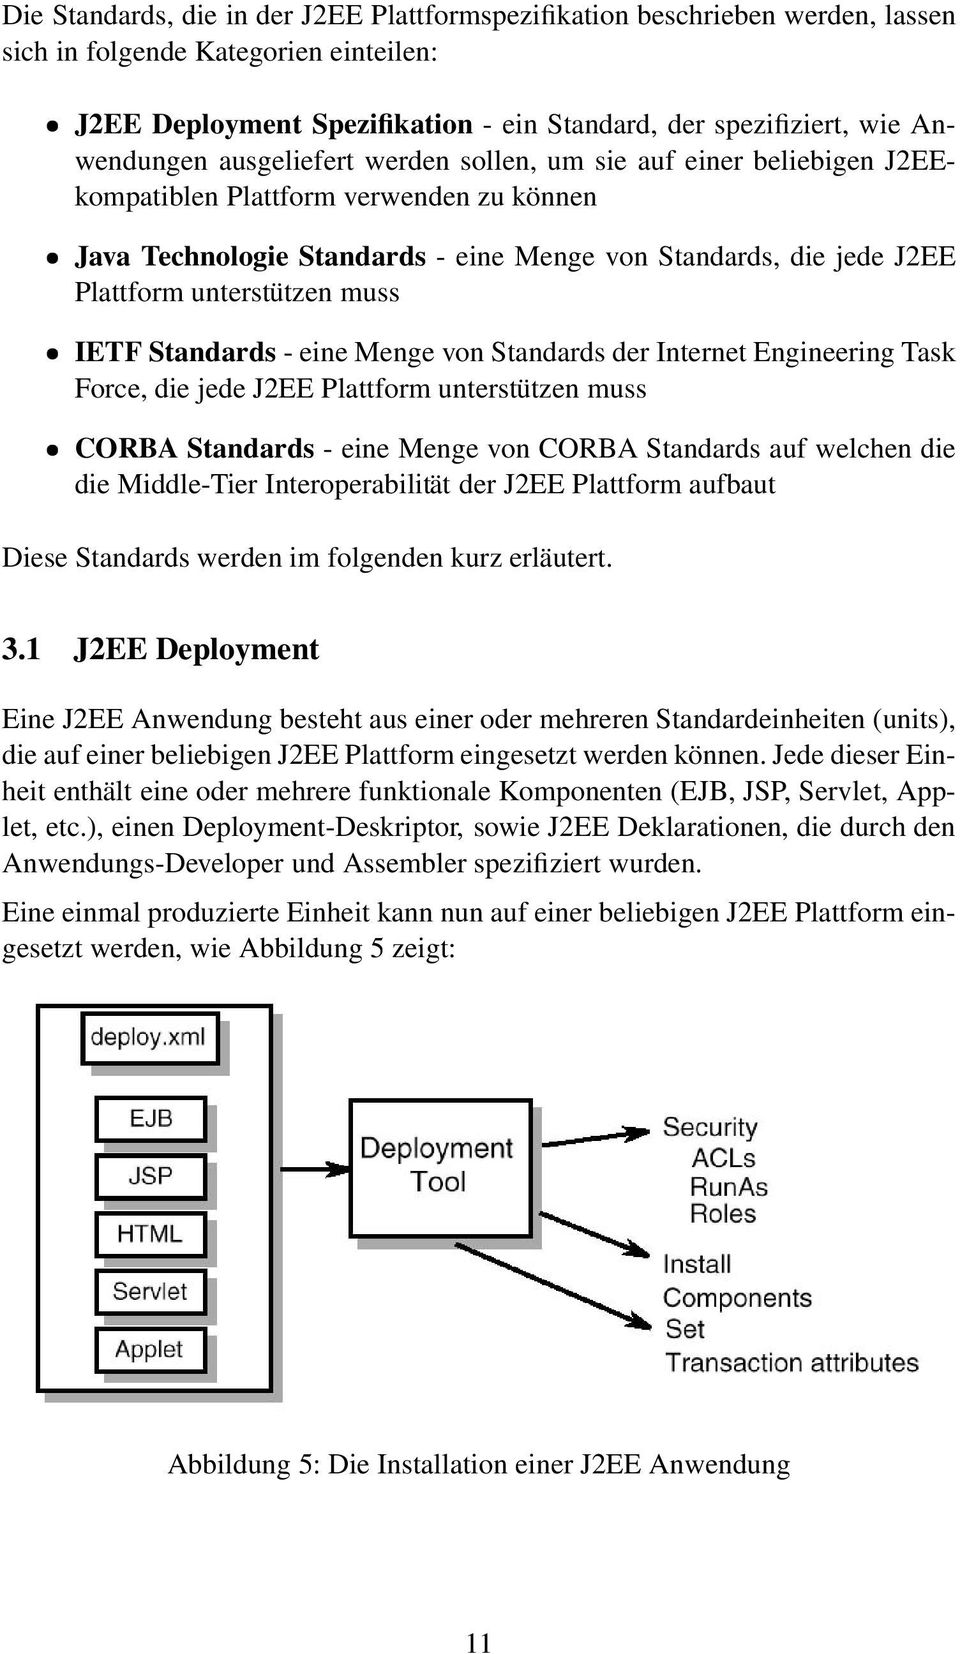 IETF Standards - eine Menge von Standards der Internet Engineering Task Force, die jede J2EE Plattform unterstützen muss CORBA Standards - eine Menge von CORBA Standards auf welchen die die